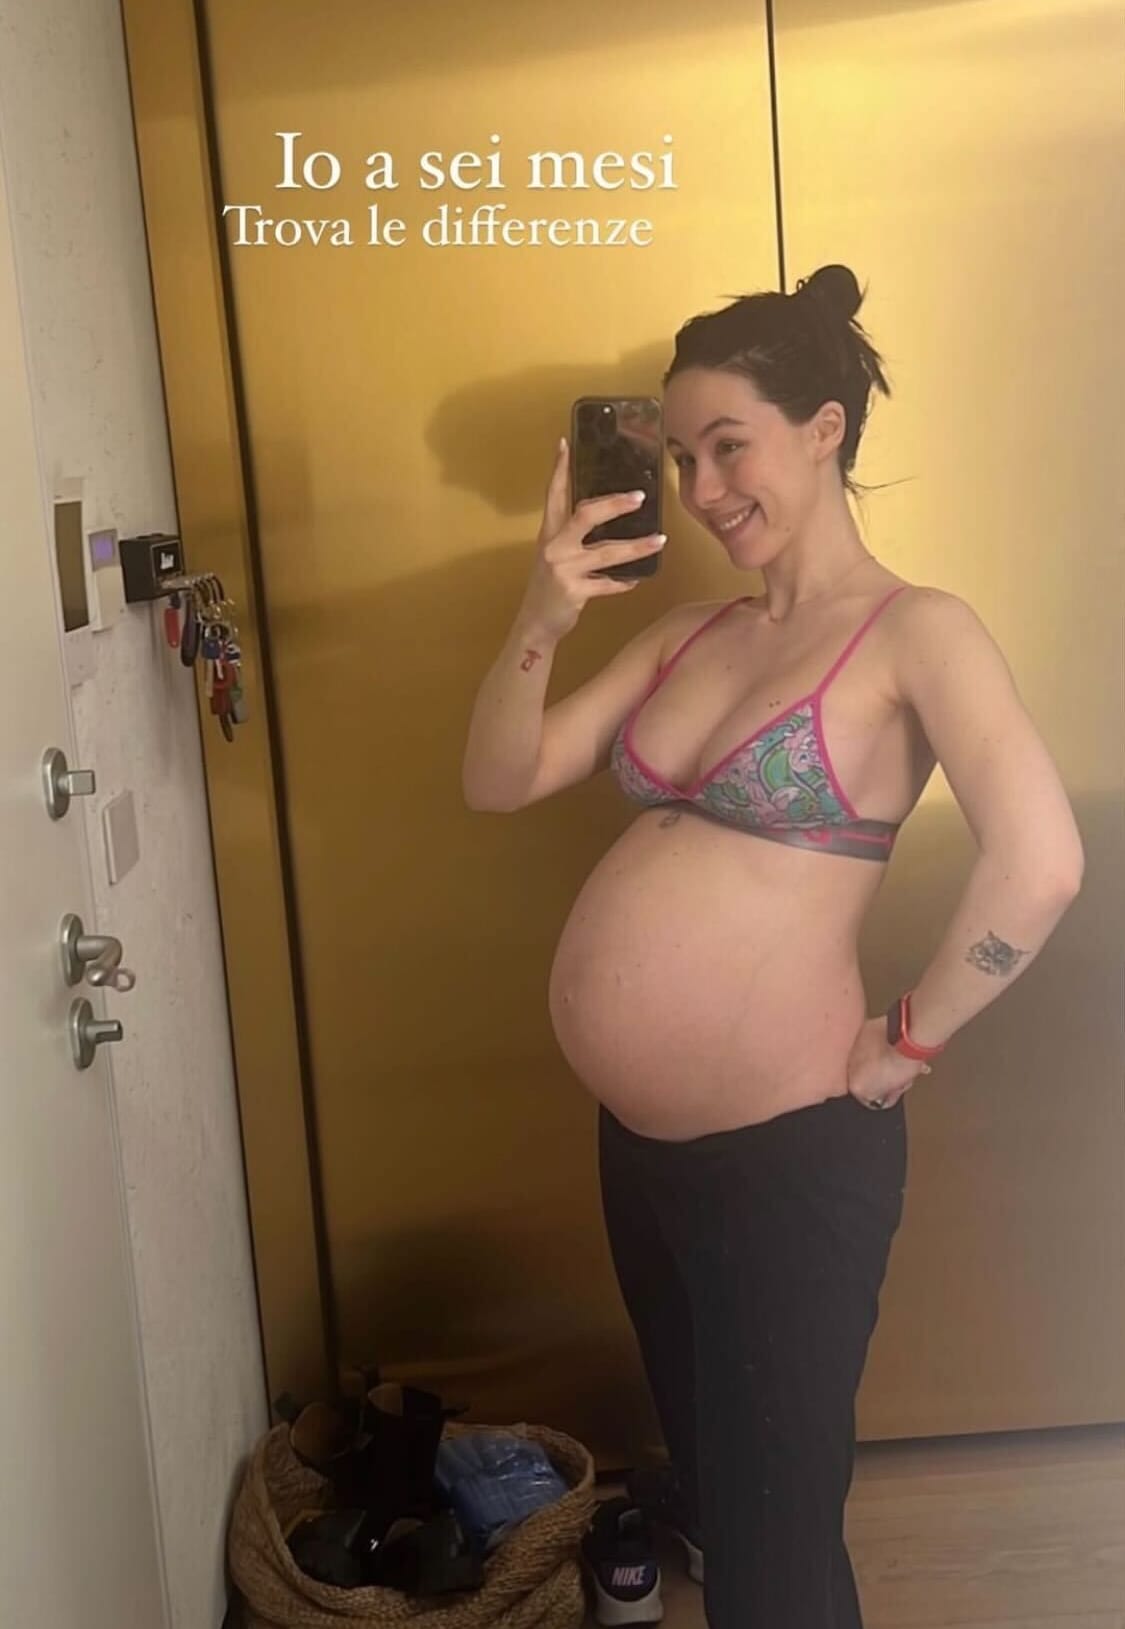 Aurora Ramazzotti wurde im März zum ersten Mal Mutter.